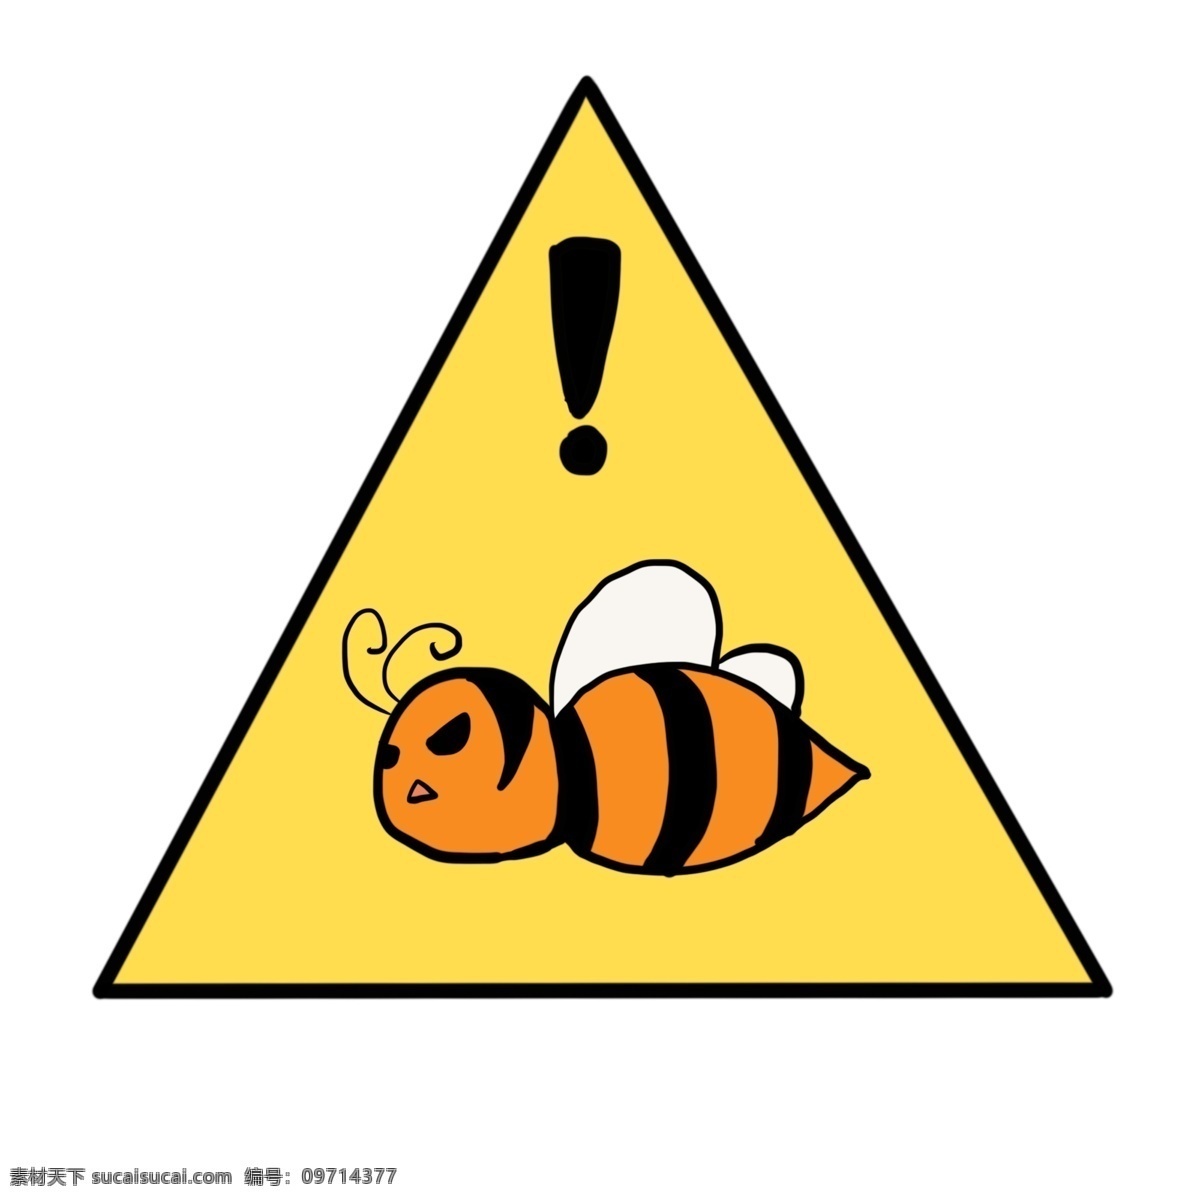 蜜蜂 出没 警示牌 插画 三角形警示牌 金色的警示牌 漂亮的警示牌 创意警示牌 立体警示牌 安全警示牌